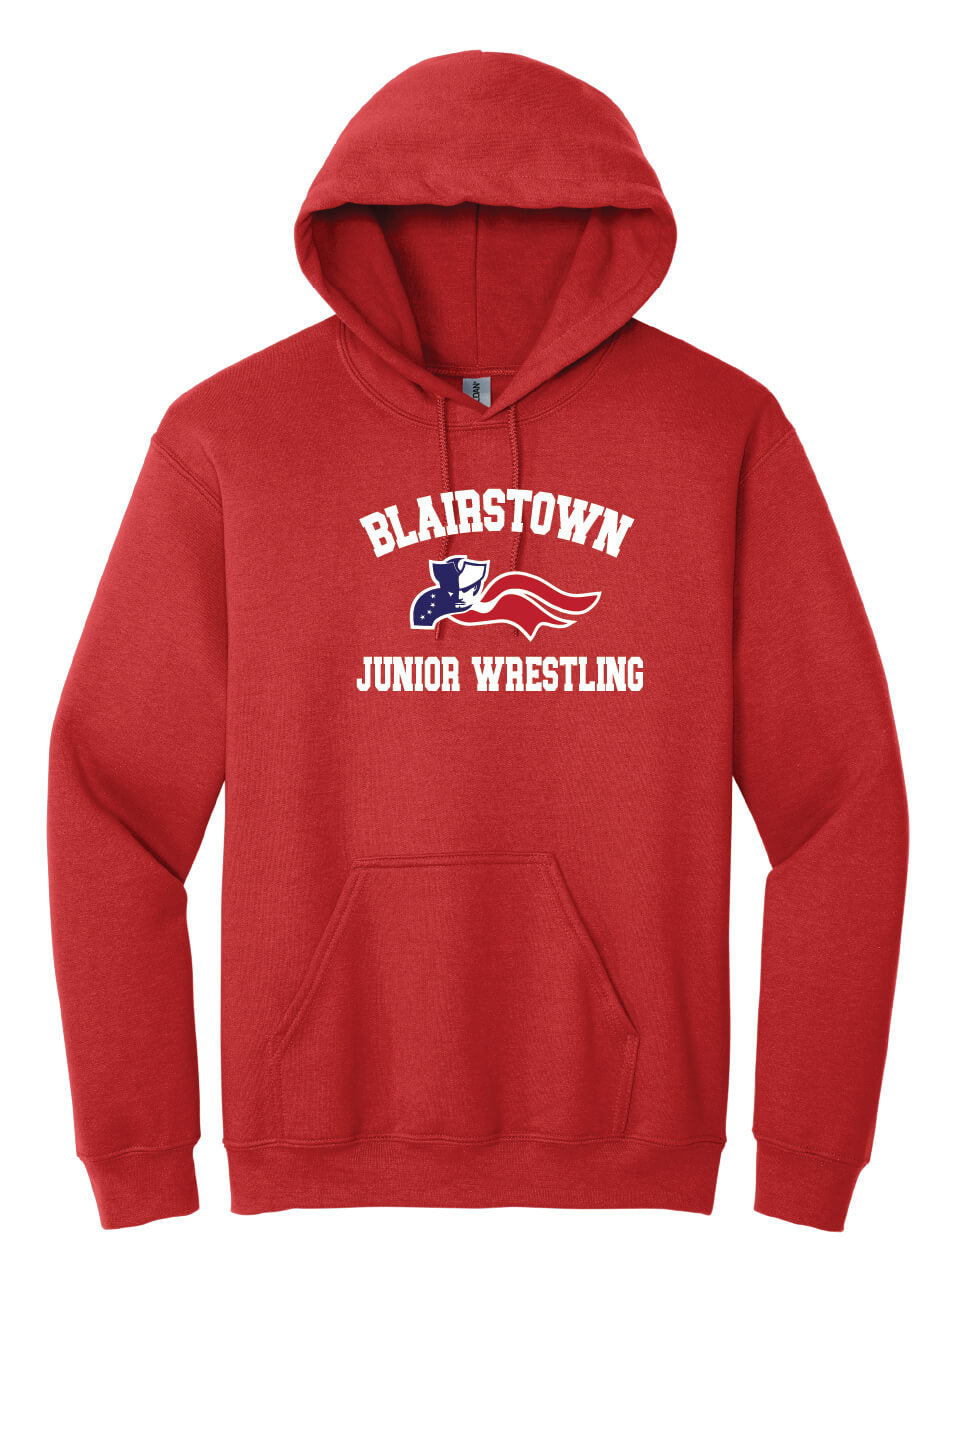 Blairstown JR Wrestling Hoodie (Youth) red